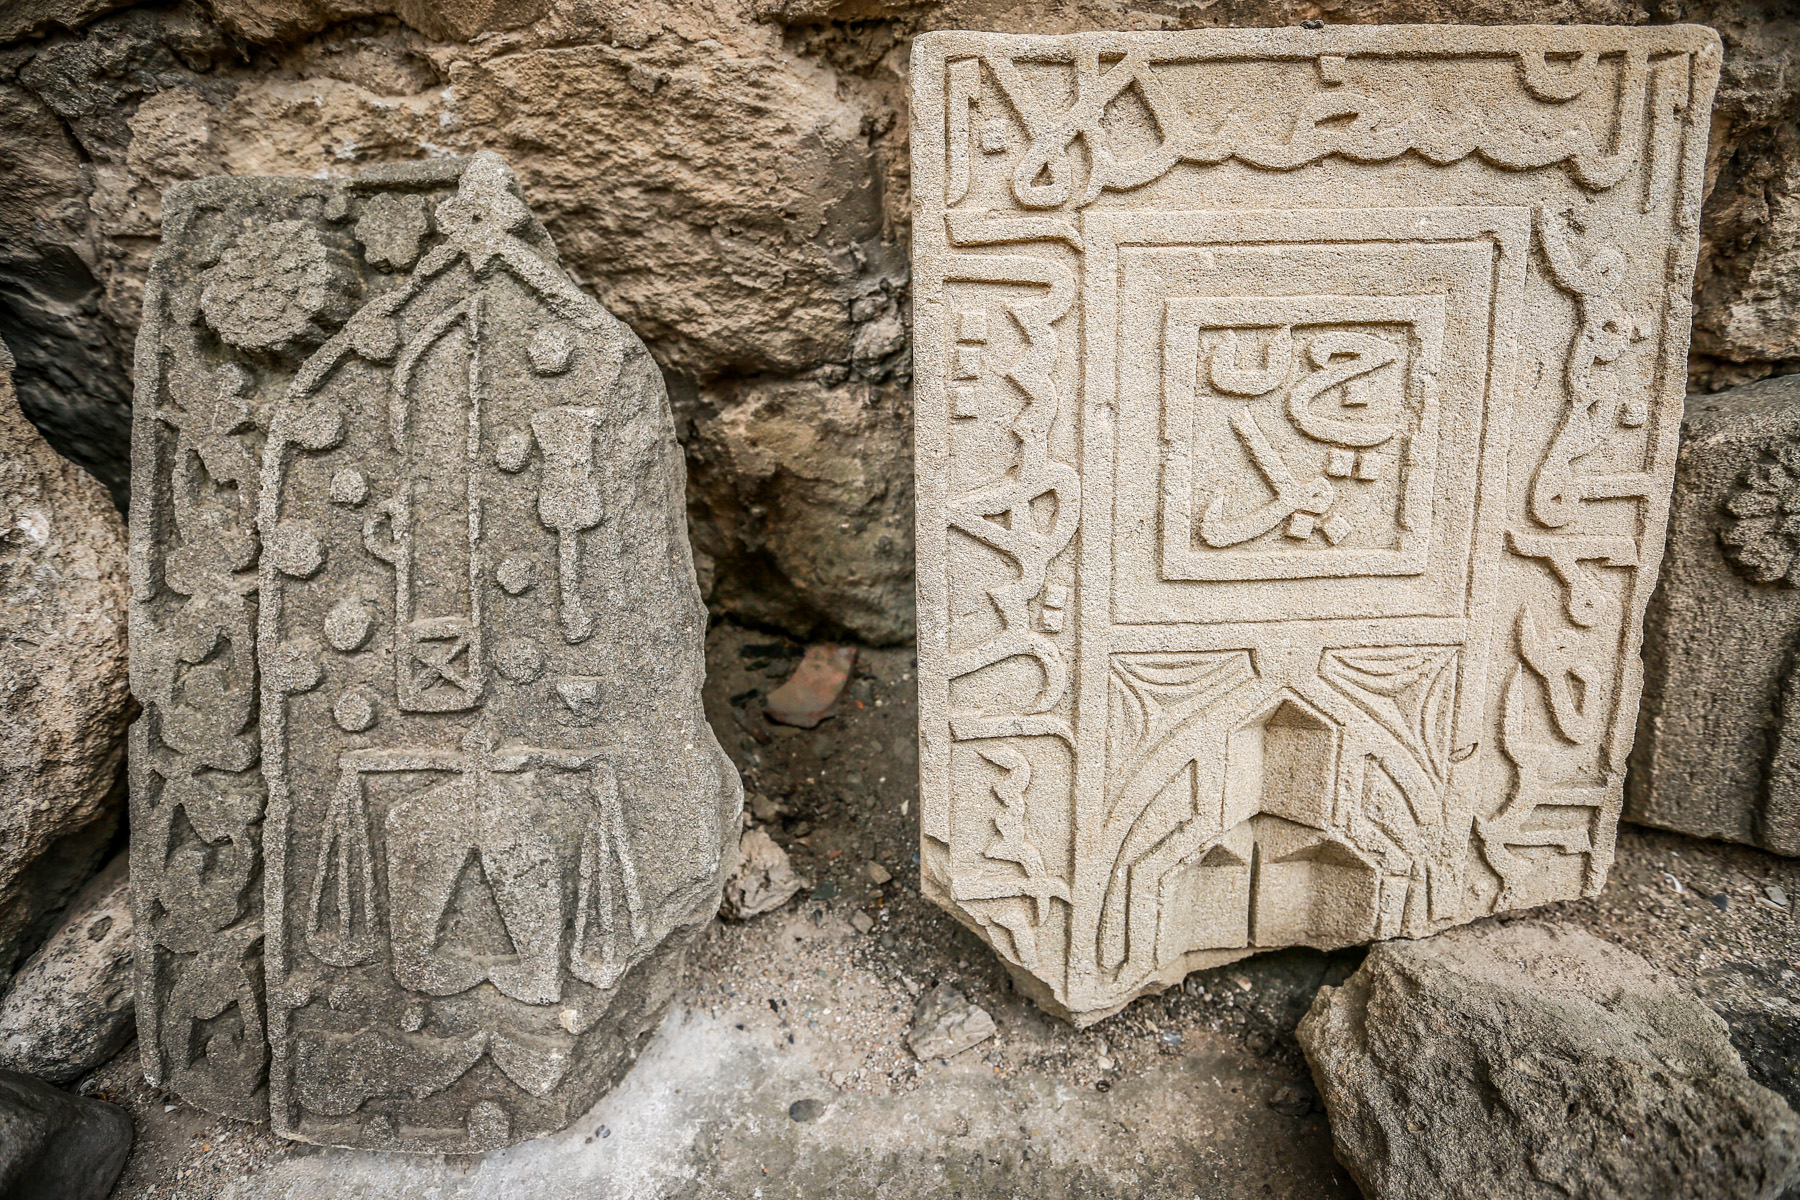 Yerli əhalinin həyətlərindən qazıntılar zamanı üzərində müxtəlif ayələr həkk olunmuş daş kitabələr tapılıb, qalanın həyətinə gətirilib